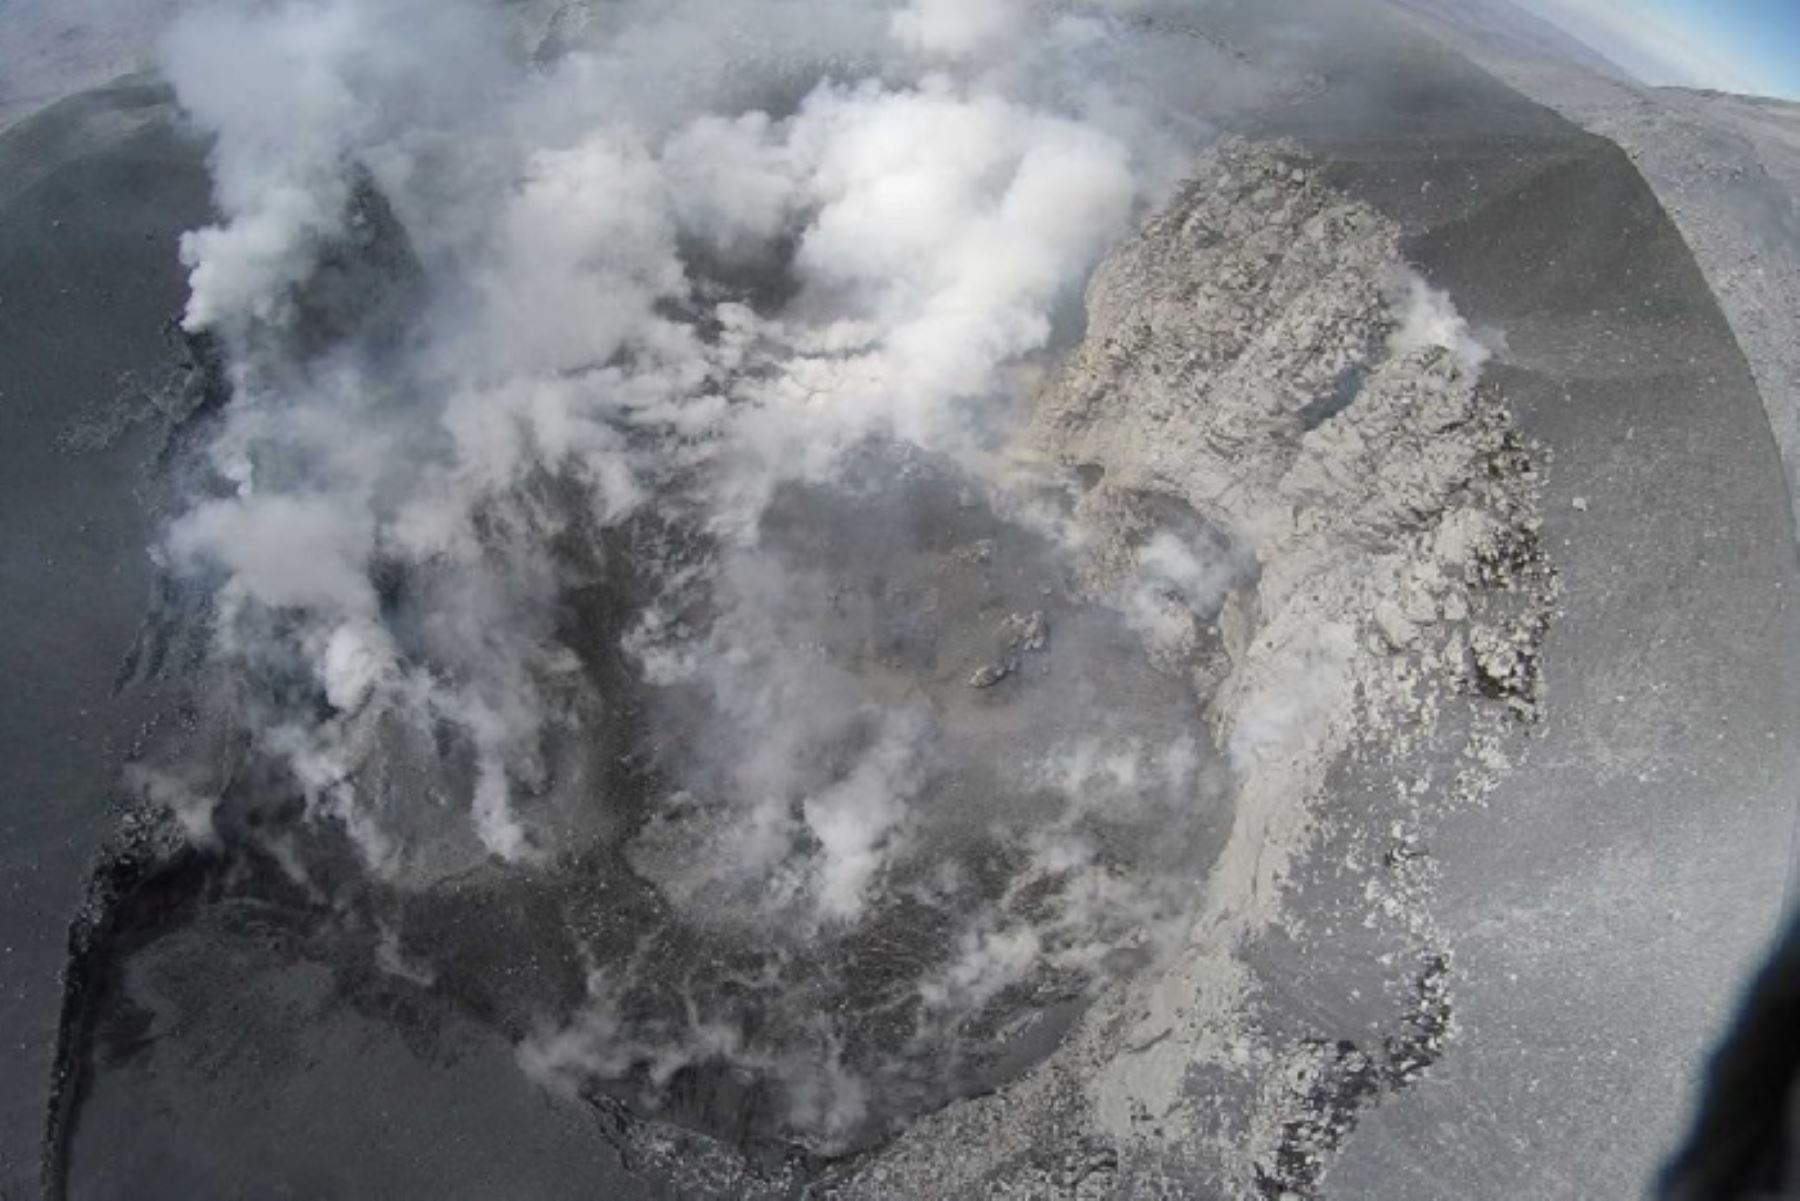 Los drones sobrevolaron el Sabancaya (5967 metros sobre el nivel del mar) y llegaron a elevarse por encima de los 6000 metros de altura, obteniendo registro visual de un cuerpo de magma en la base del mismo cráter del volcán.